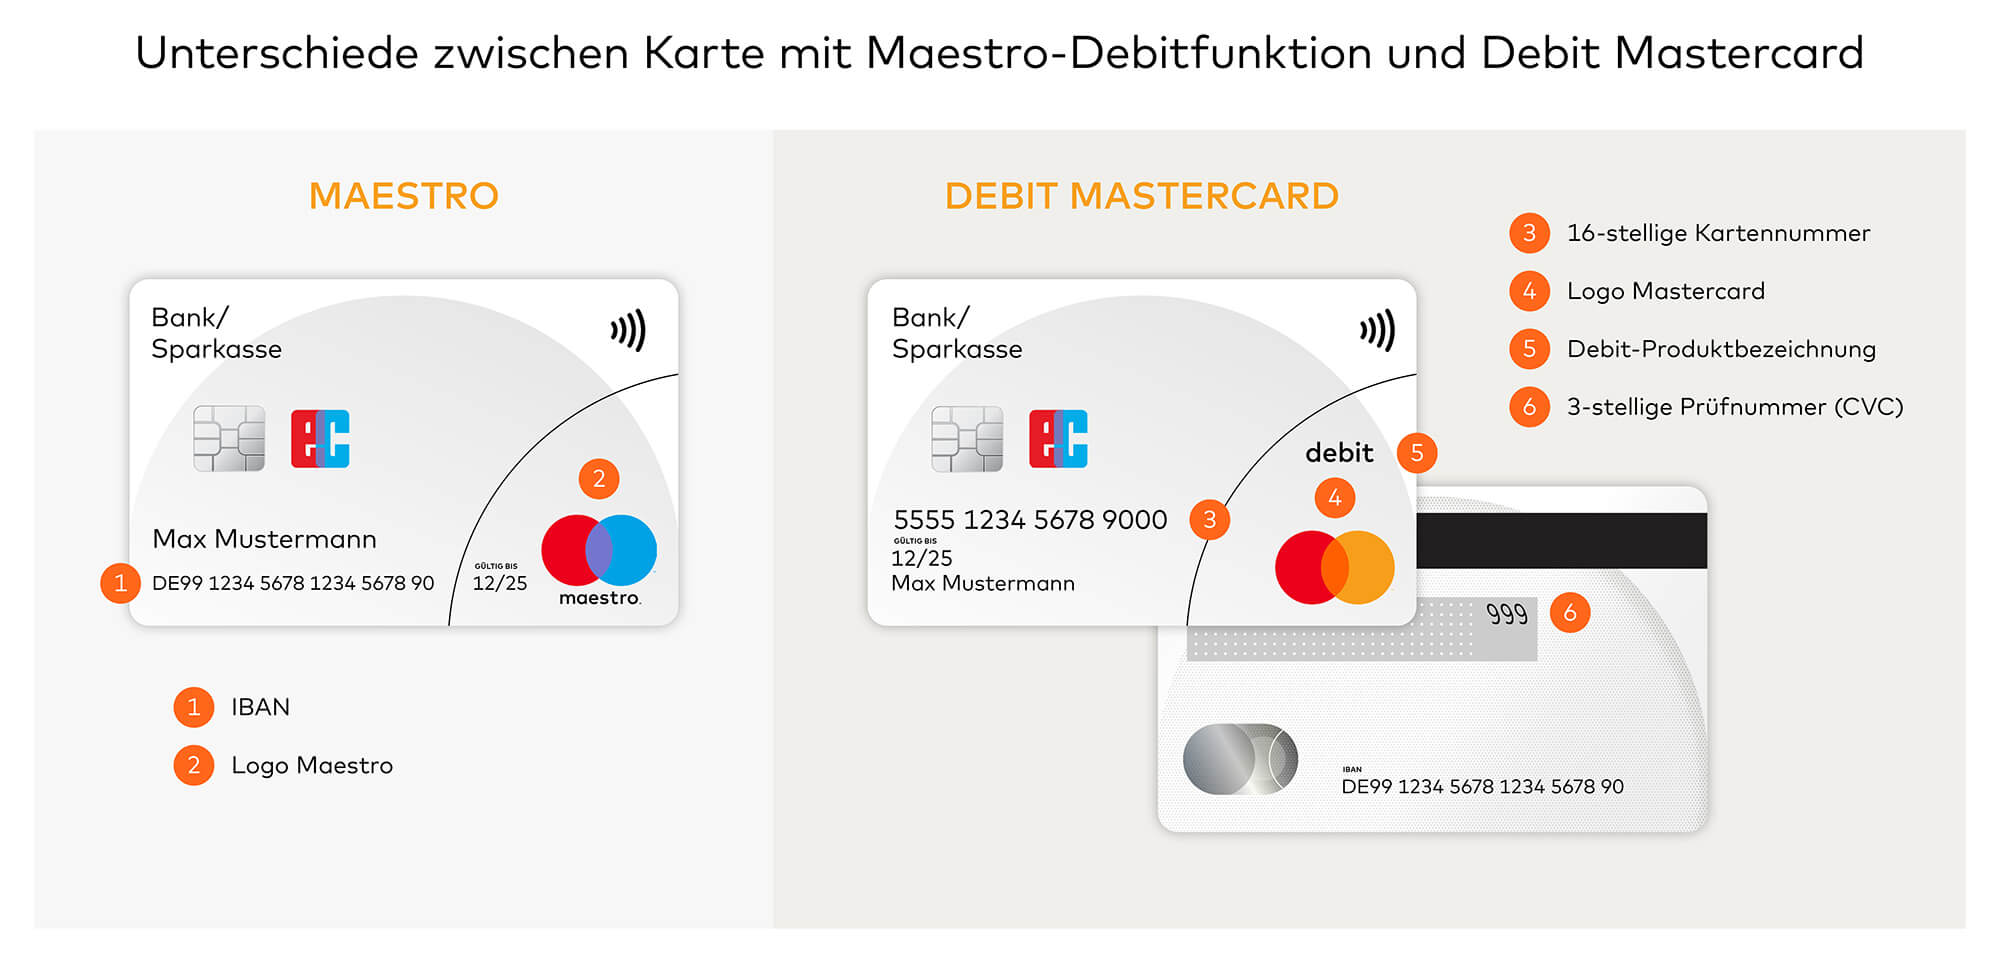 Unterschiede zwischen Maestro-Karte und Debit Mastercard